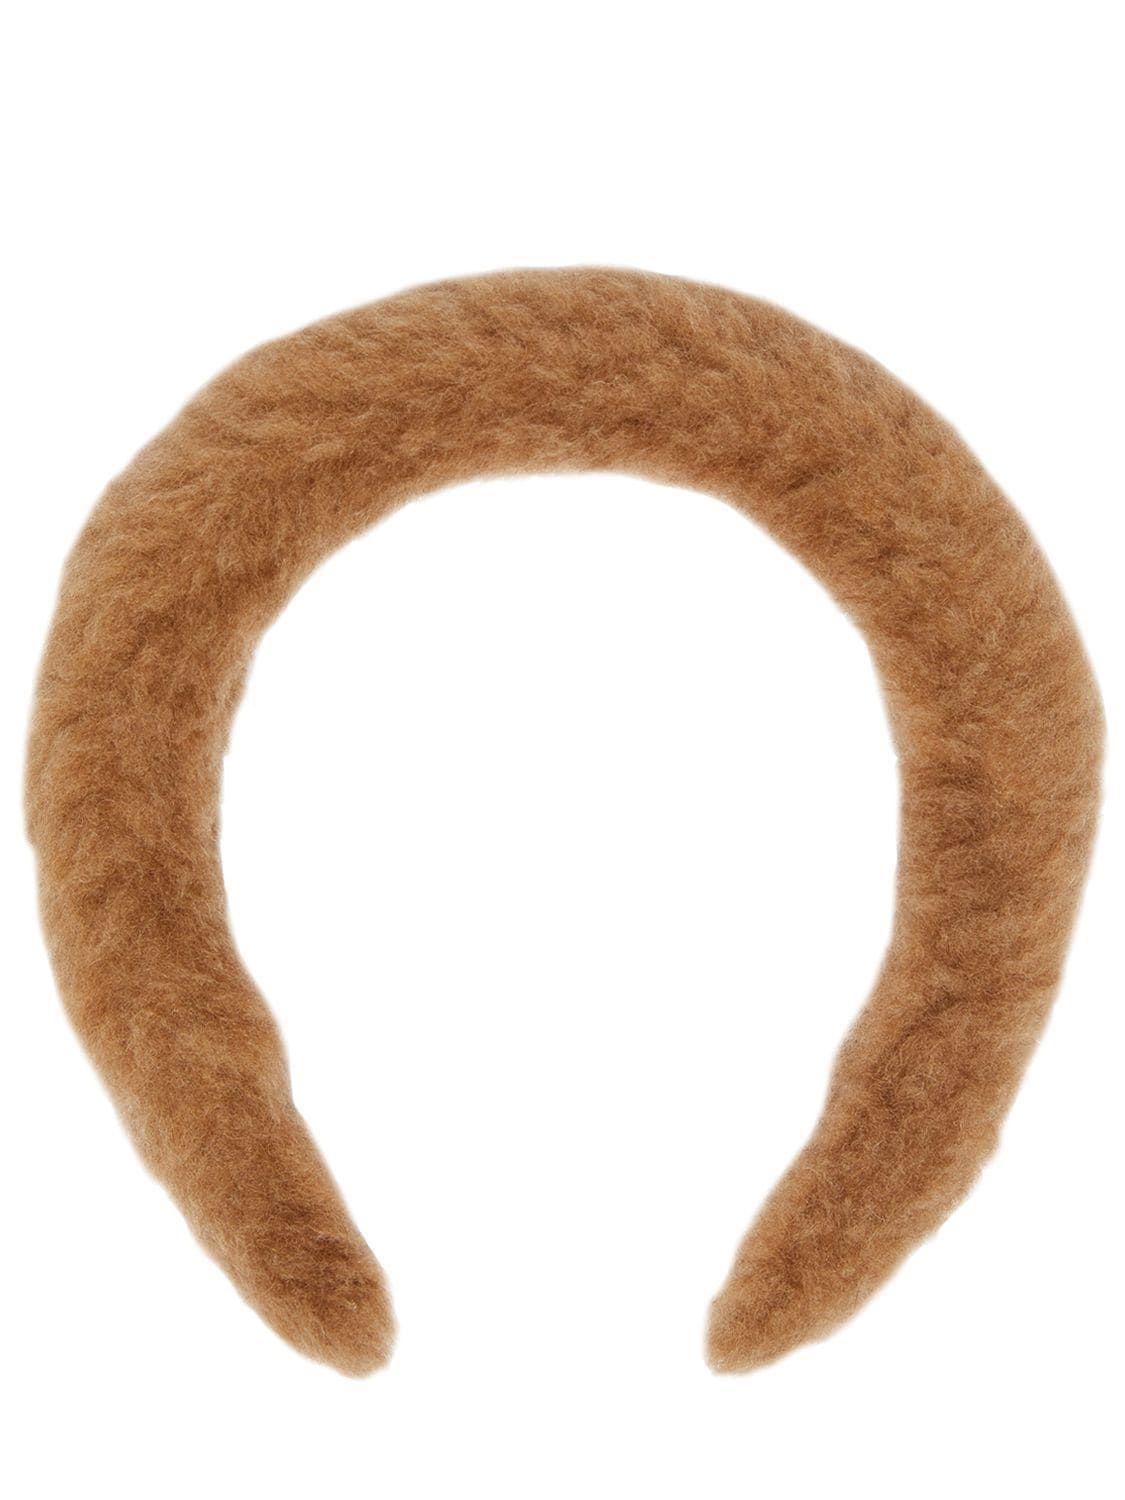 Max Mara Hoopyt Teddy Effect Headband in White | Lyst